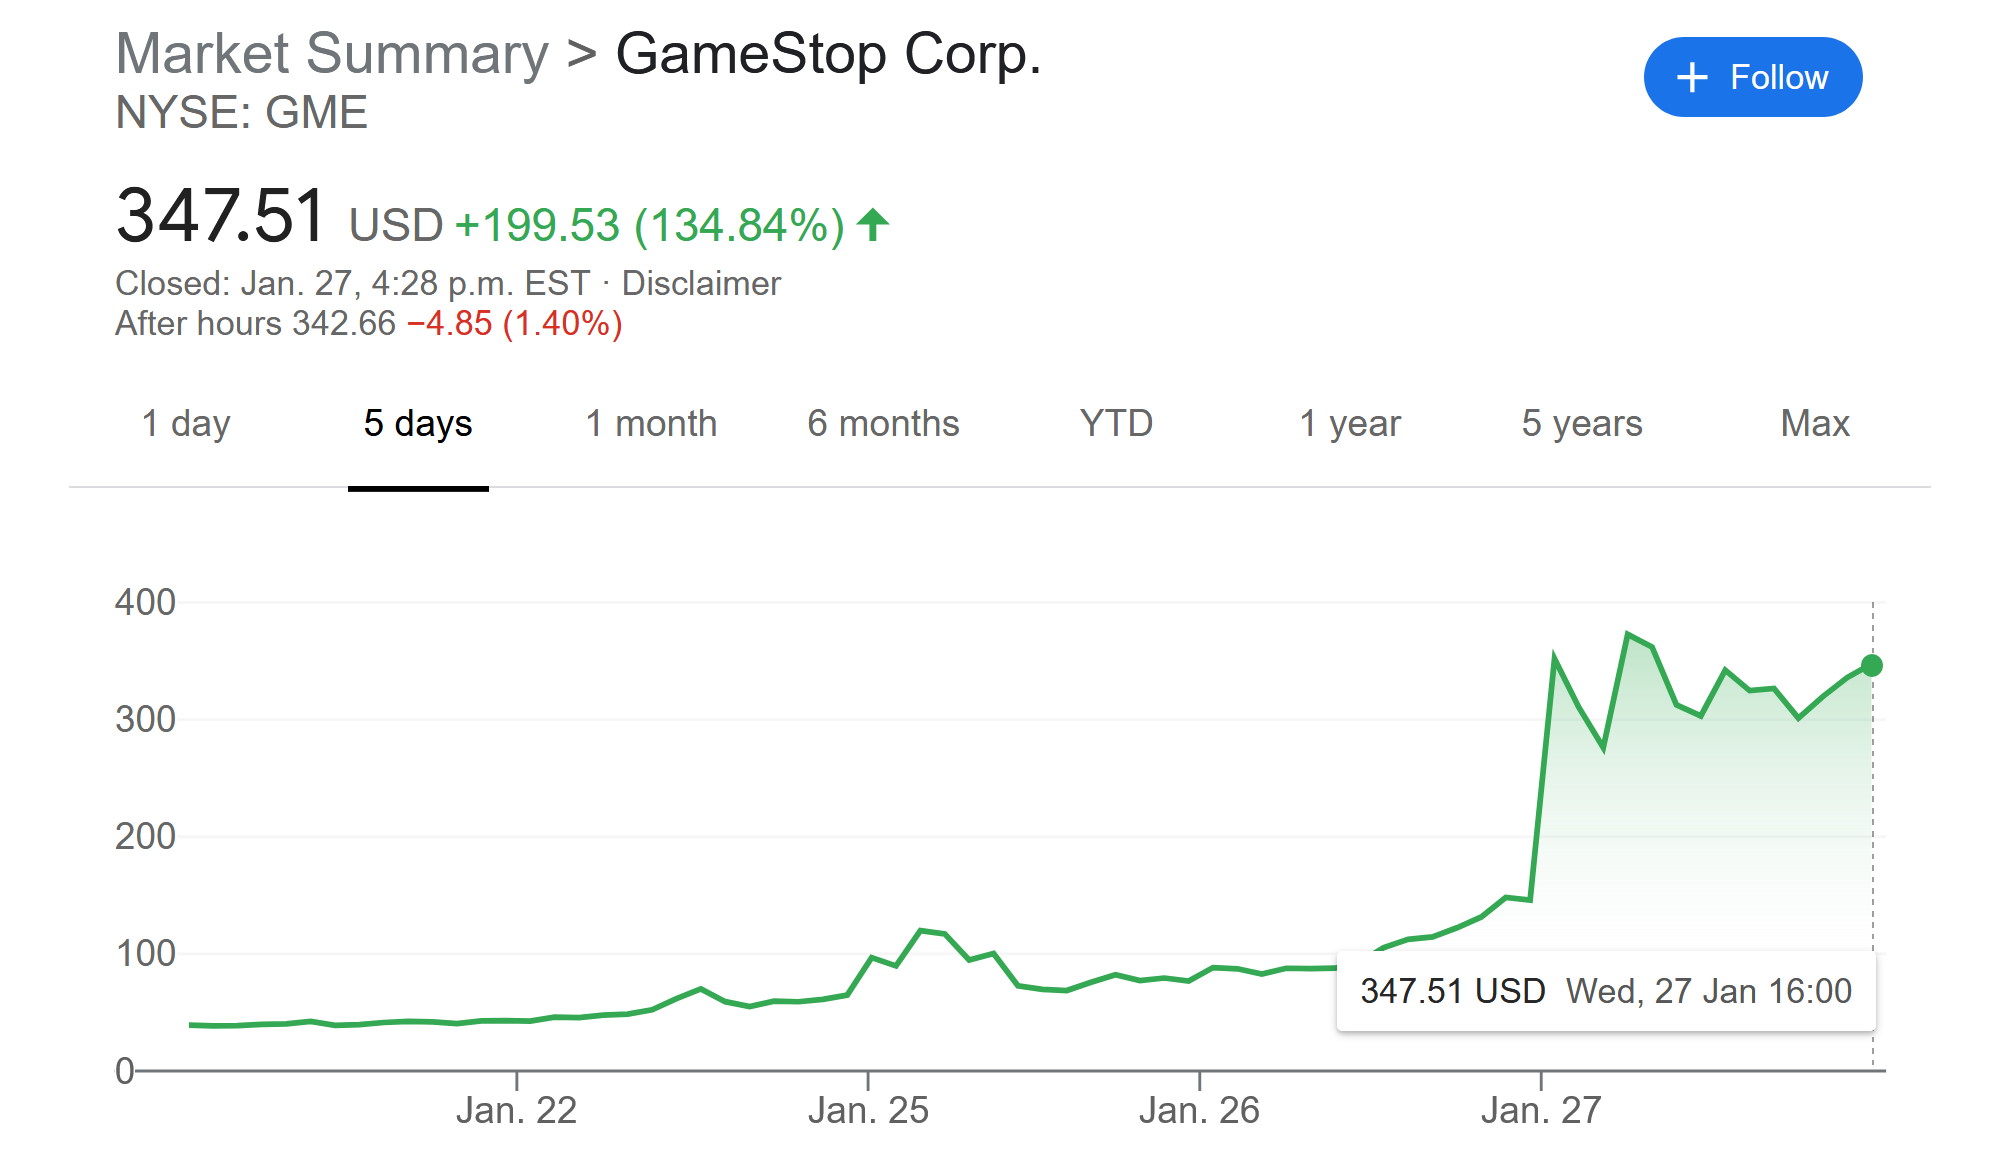 Reddit-fueled GameStop craze pits hedge funds against 'little guy